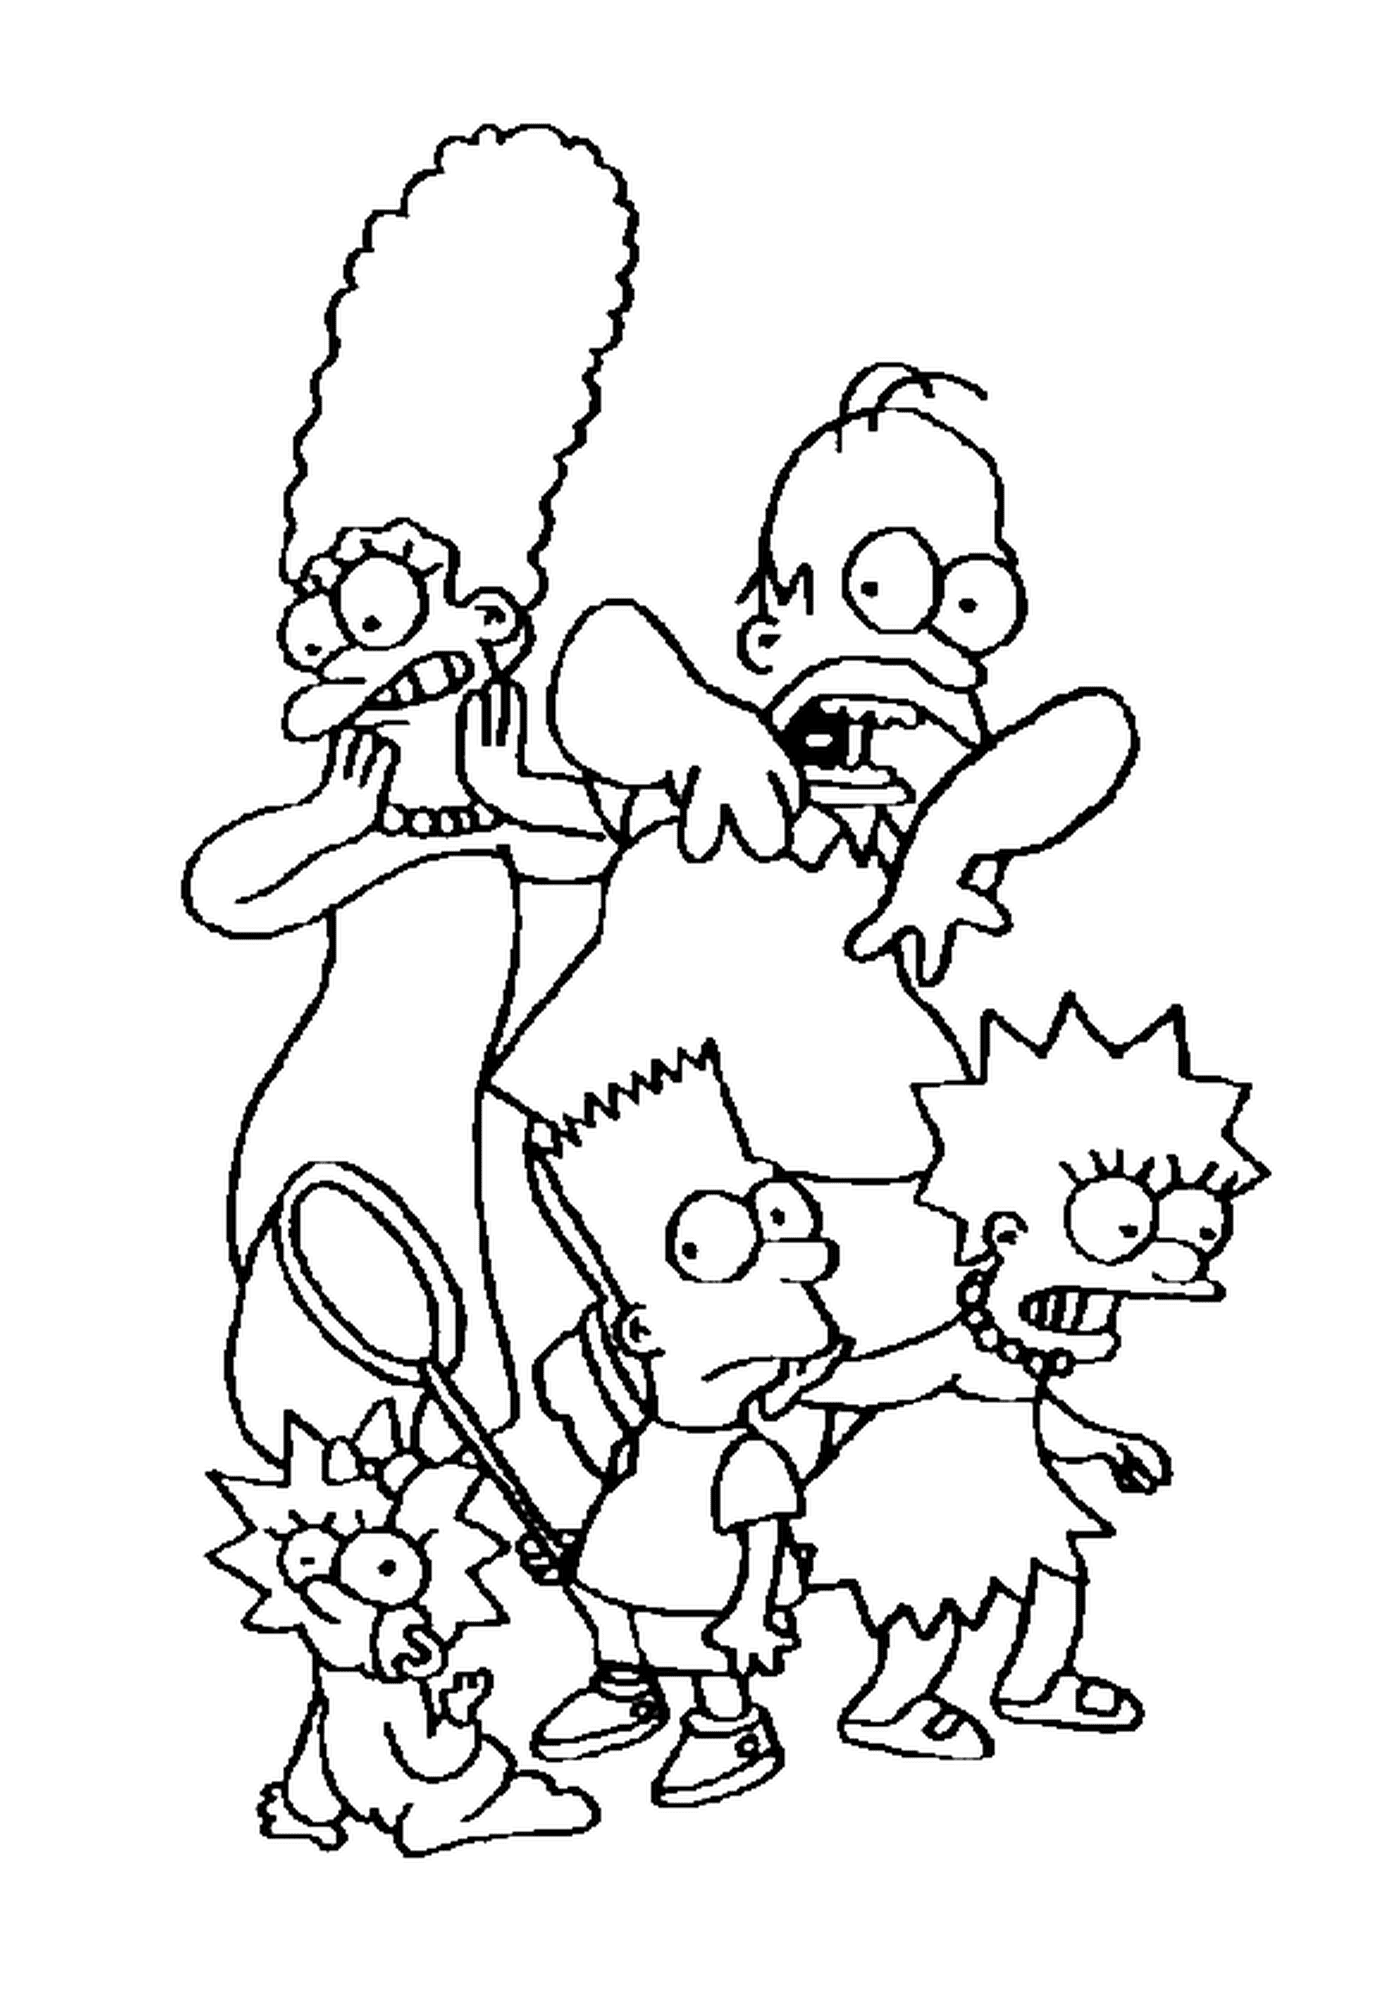  La asustada familia Simpson, personajes de dibujos animados 